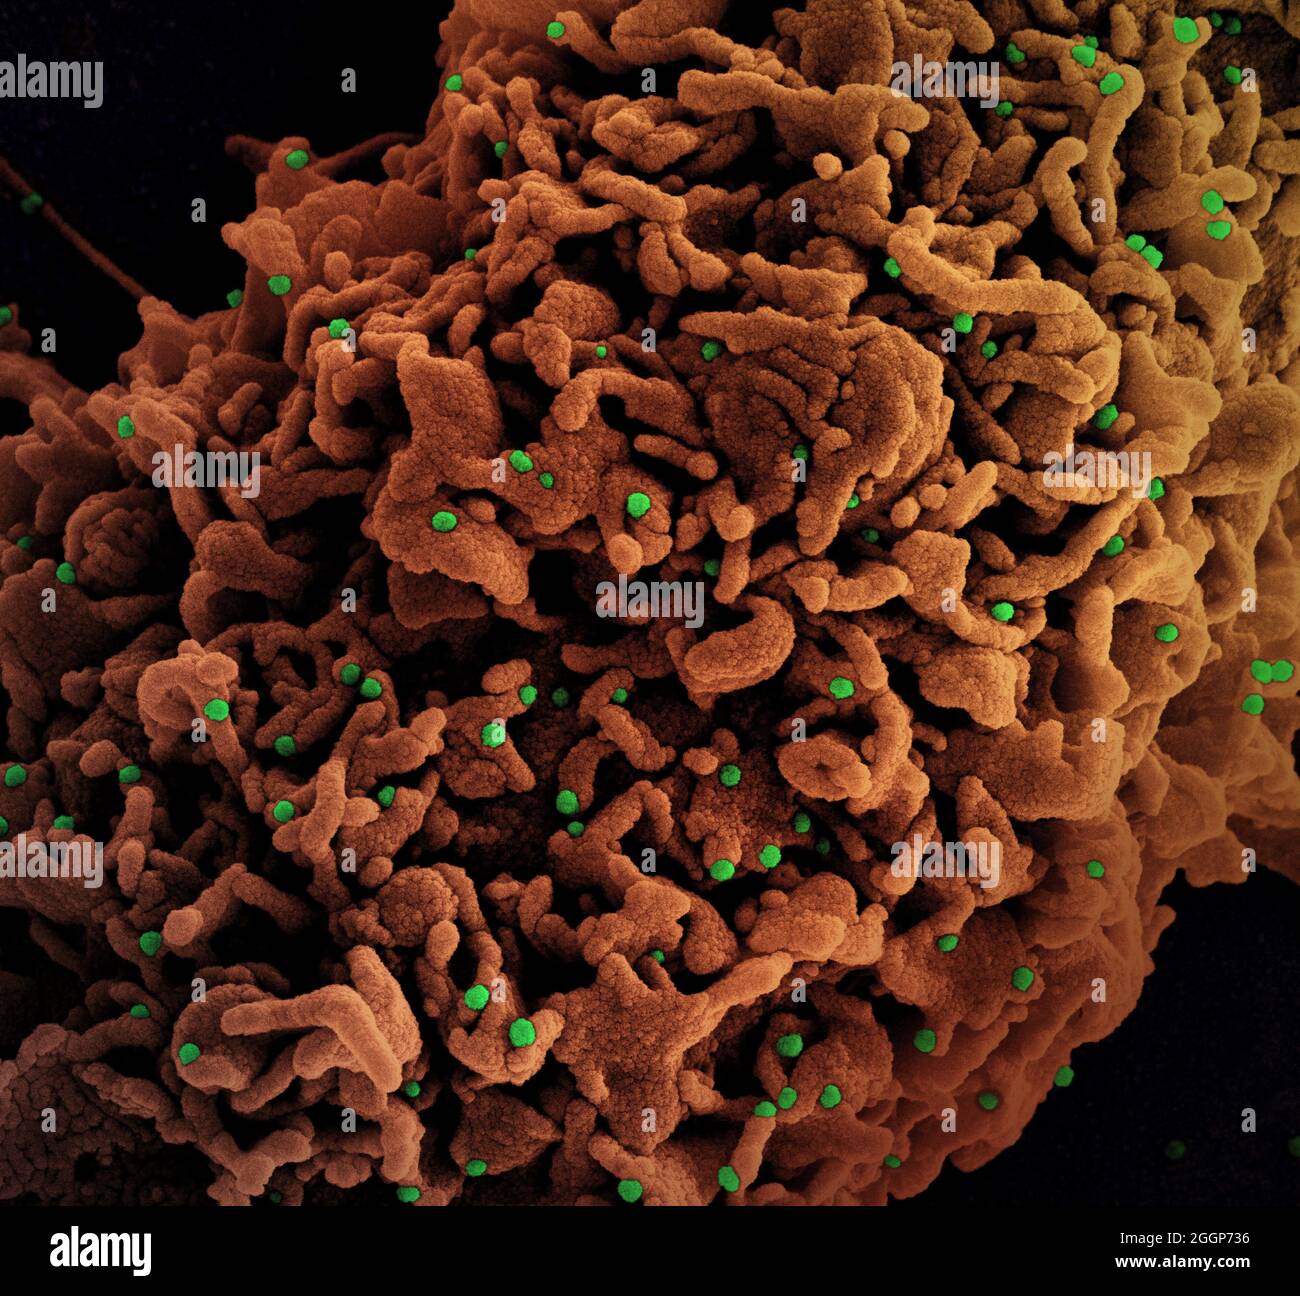 Micrografía electrónica coloreada de una célula (marrón) infectada con el Reino Unido B. Foto de stock